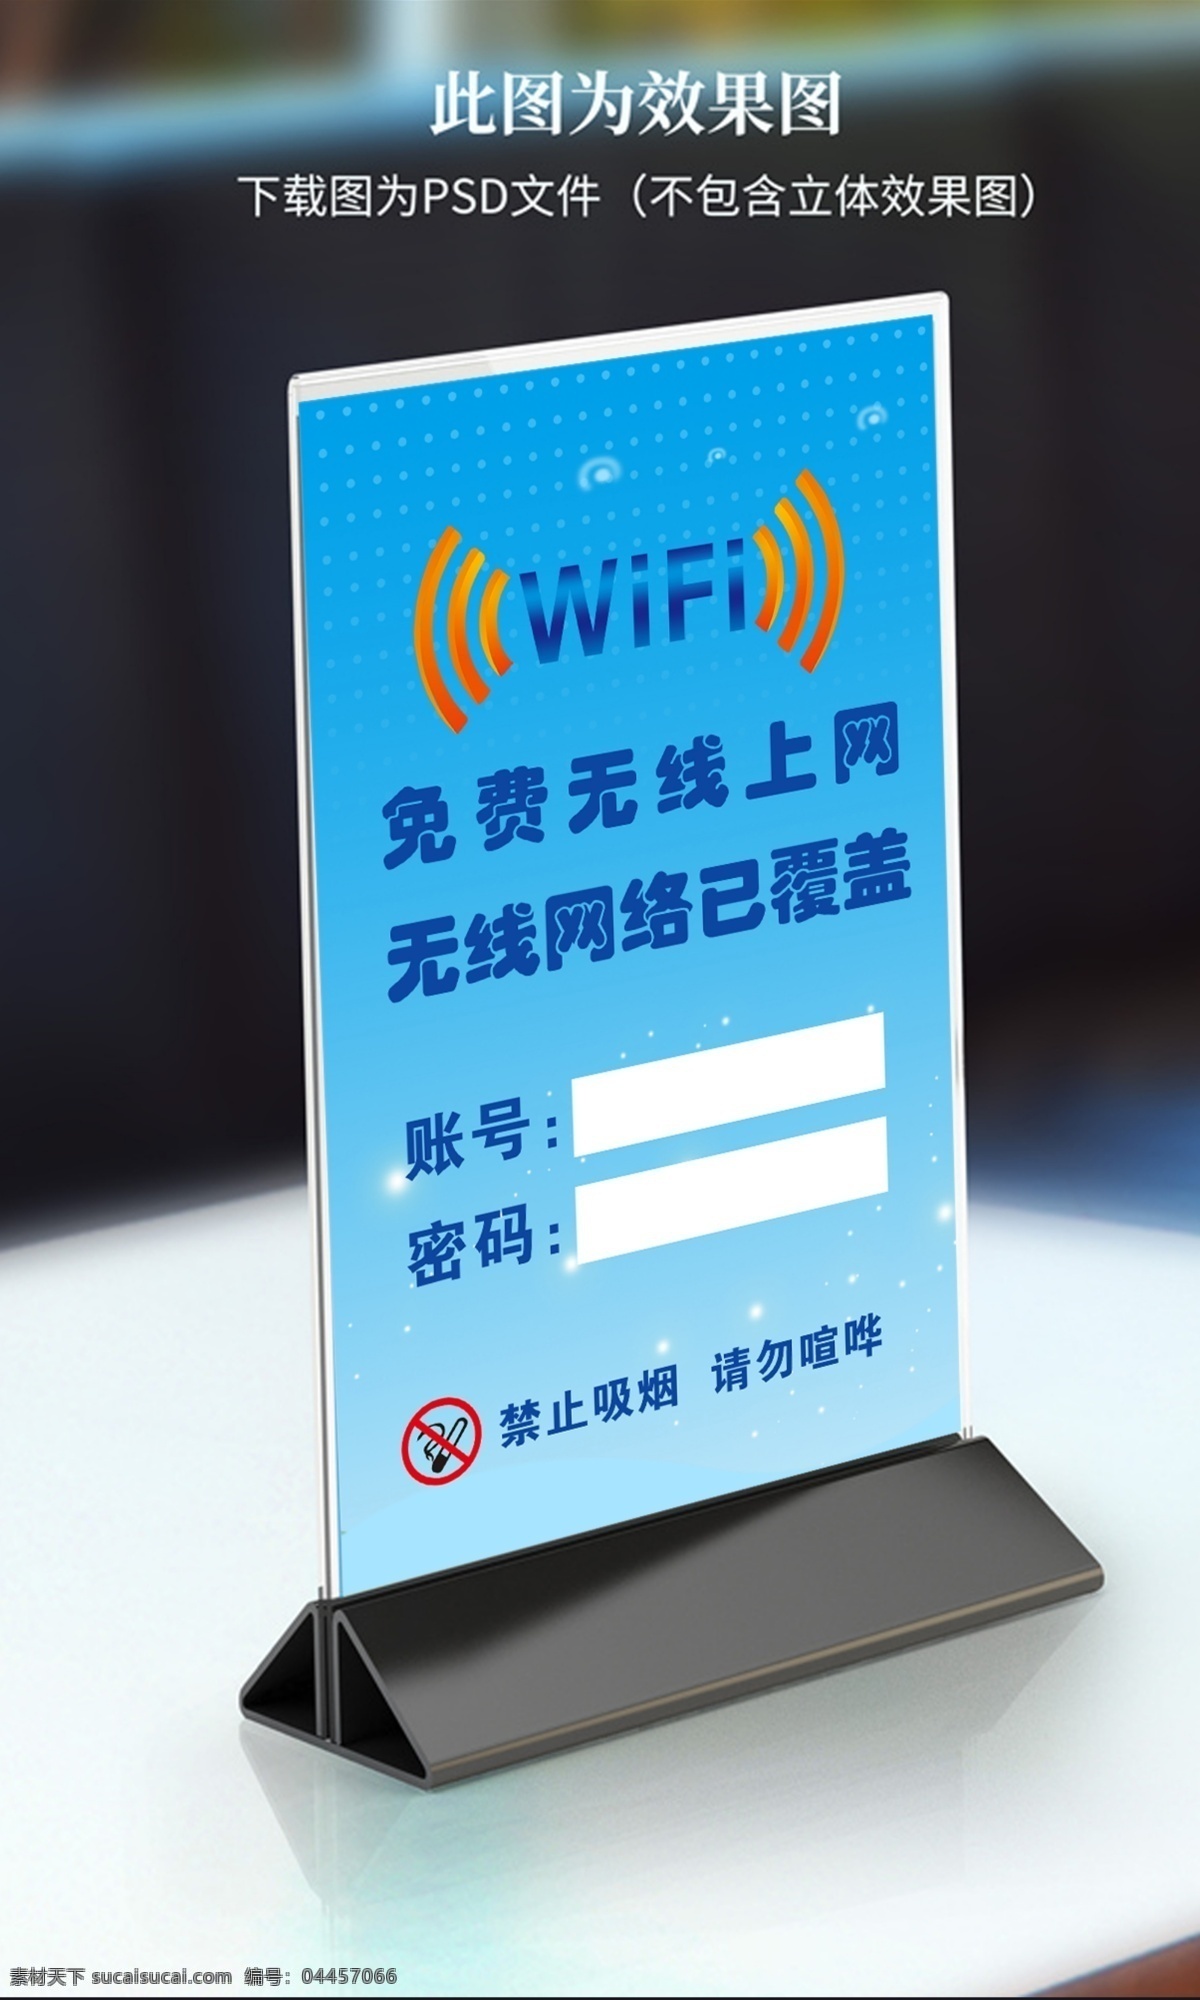 无线网络图片 wifi 无线网络 网络已覆盖 无线 上网 wifi密码 wifi连接